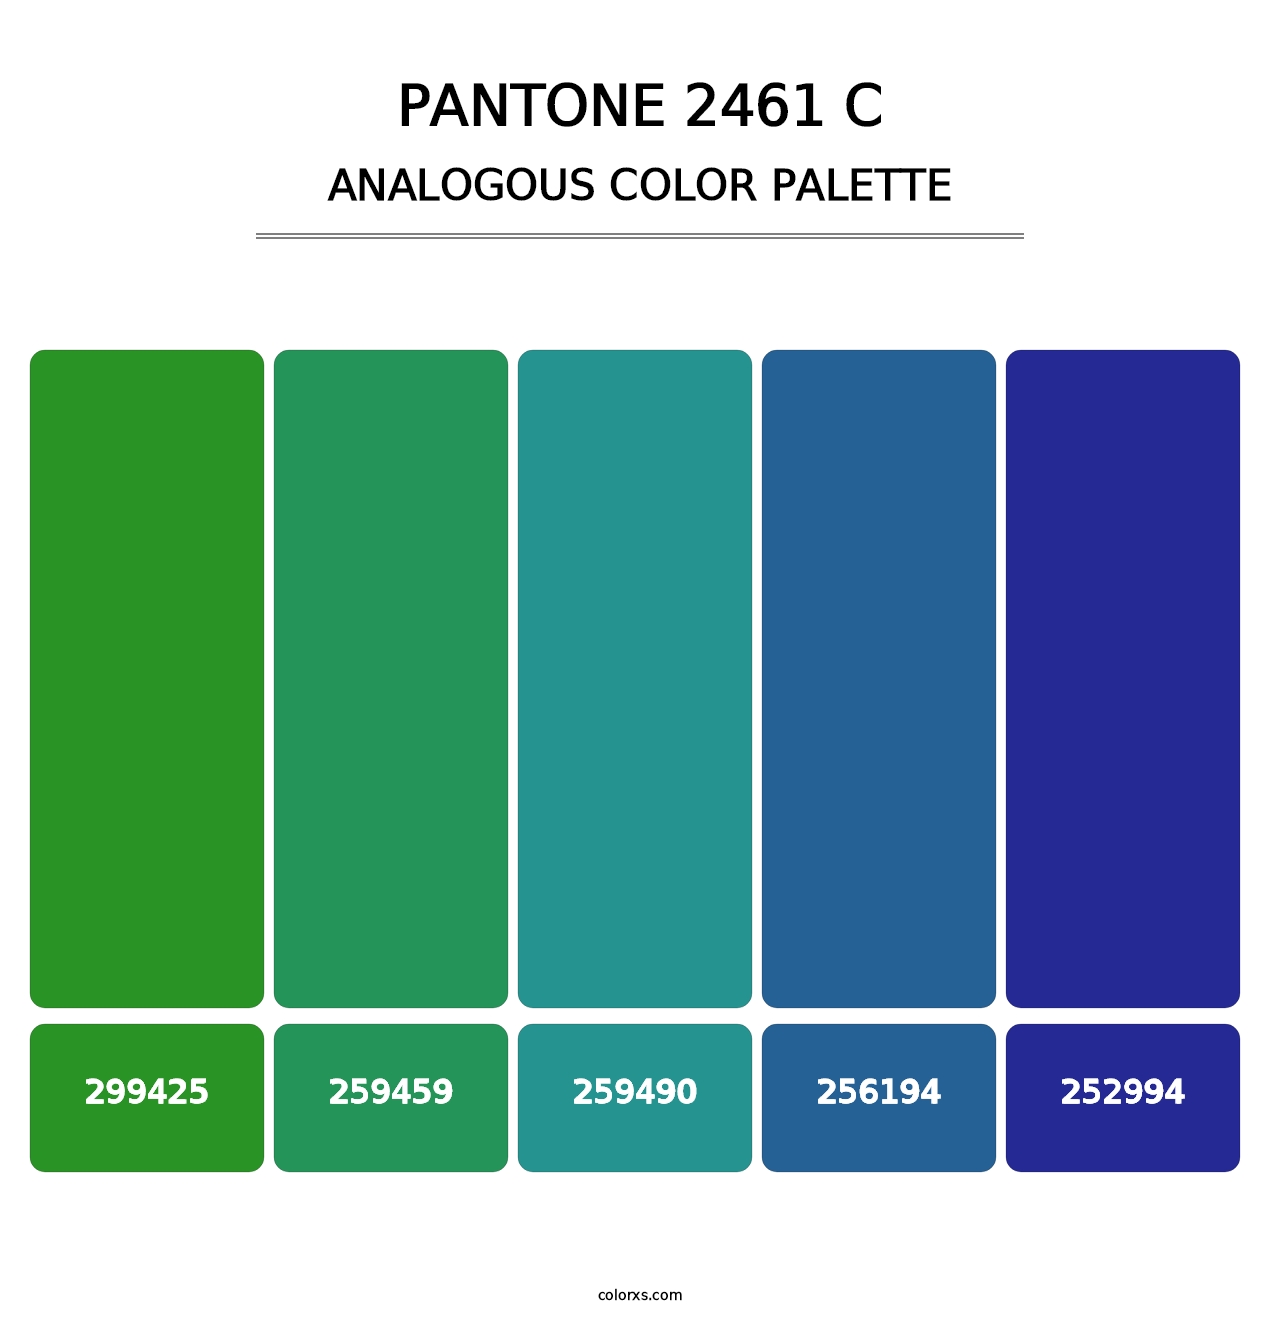 PANTONE 2461 C - Analogous Color Palette